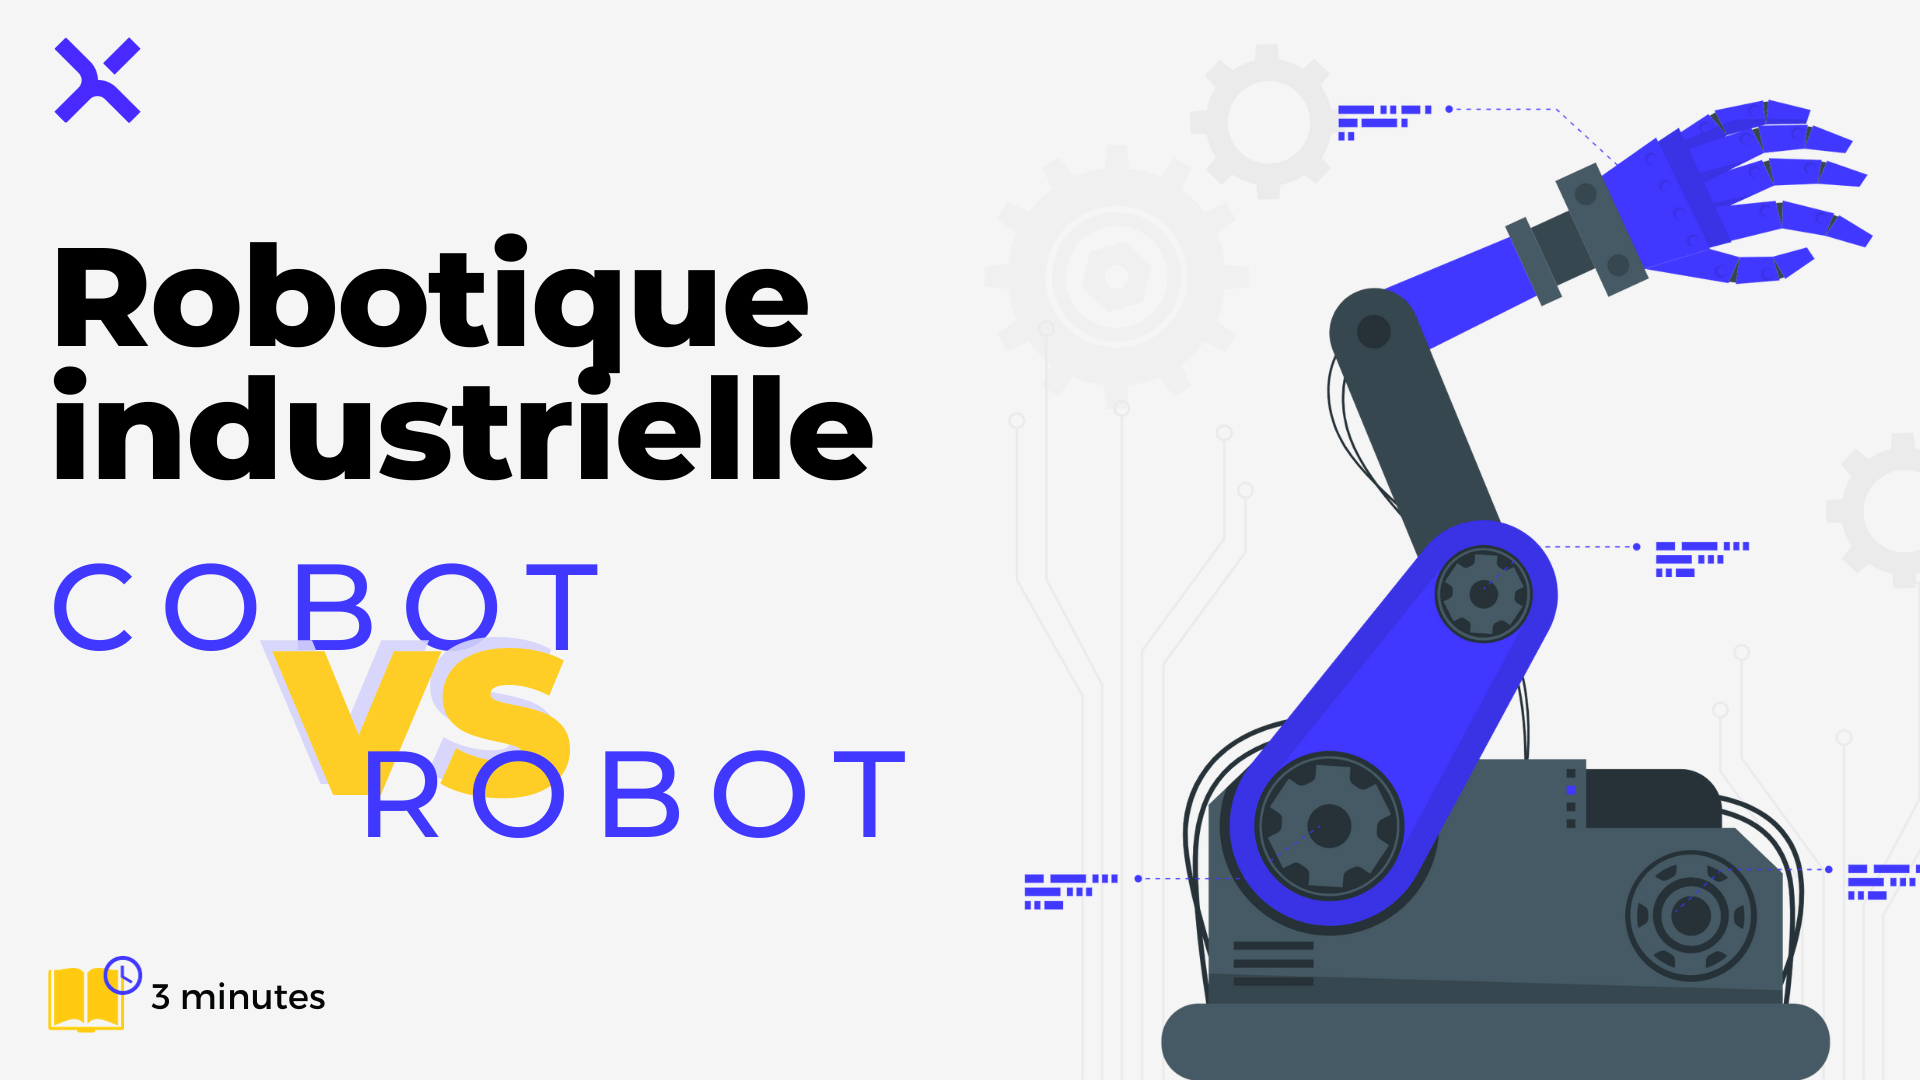 Robotique industrielle : robot vs cobot - article